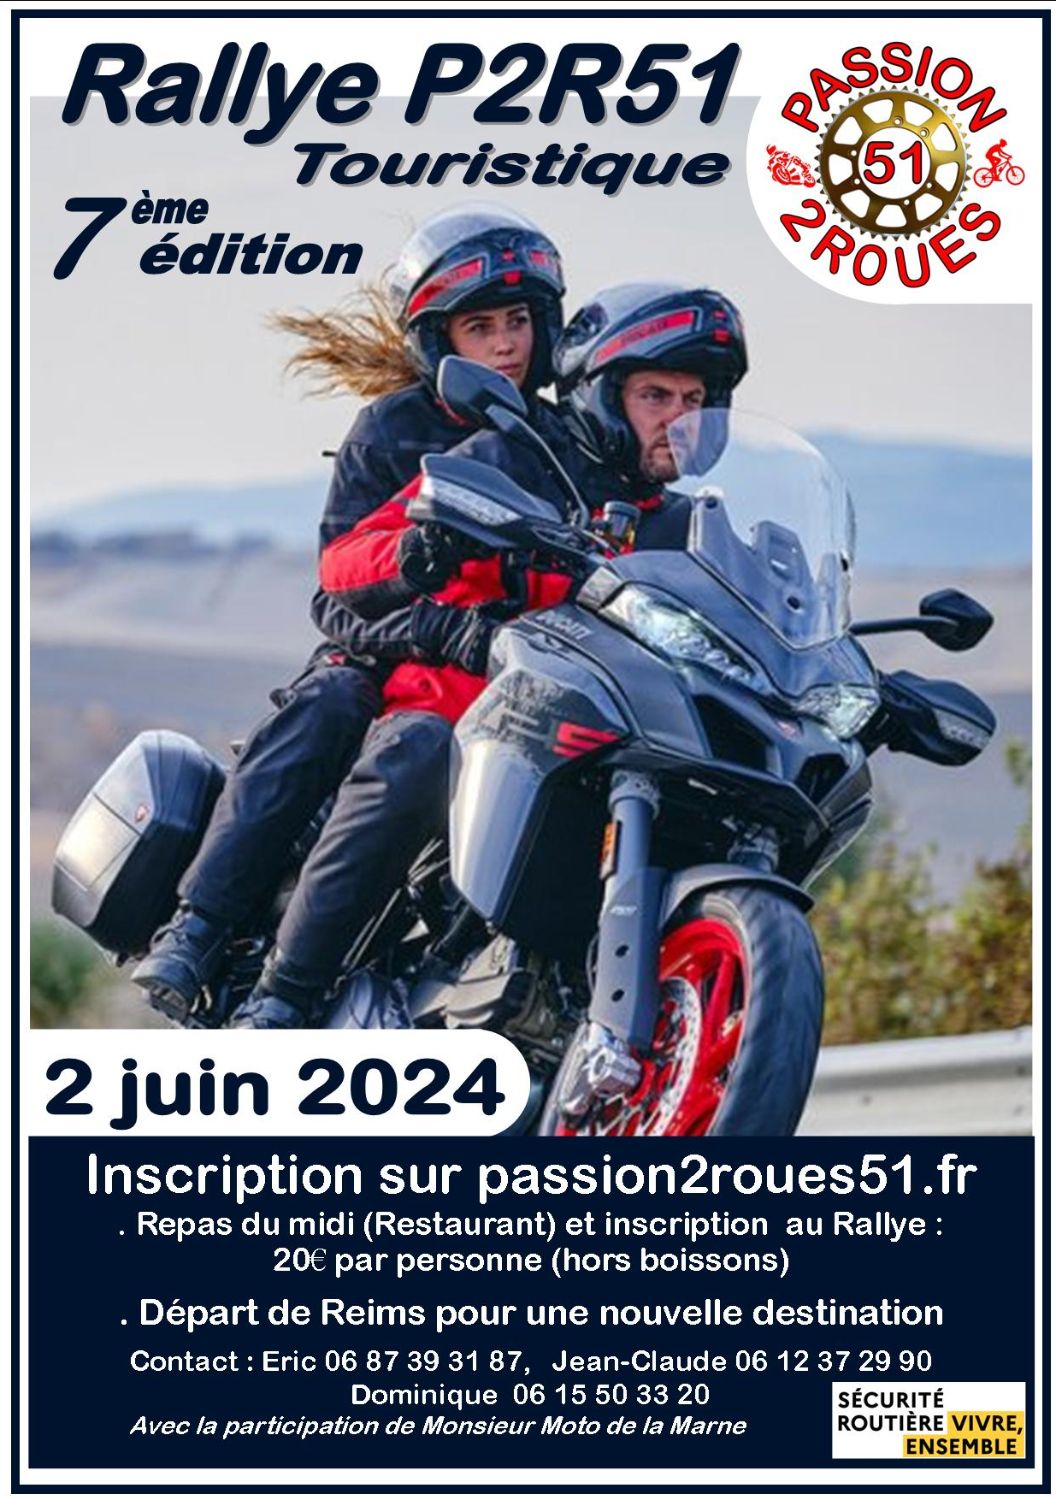 Rallye Passion 2 Roues 51 du 2 juin 2024